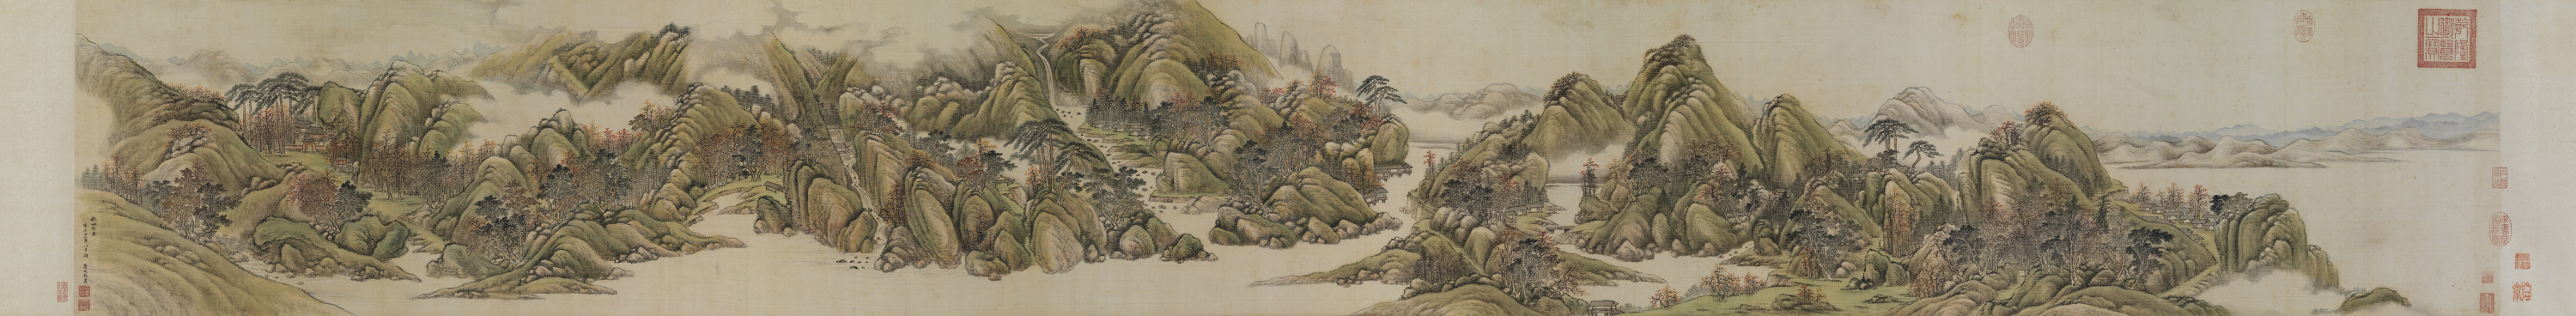 唐岱 (1673 – 1751后)<br> 秋山不老图